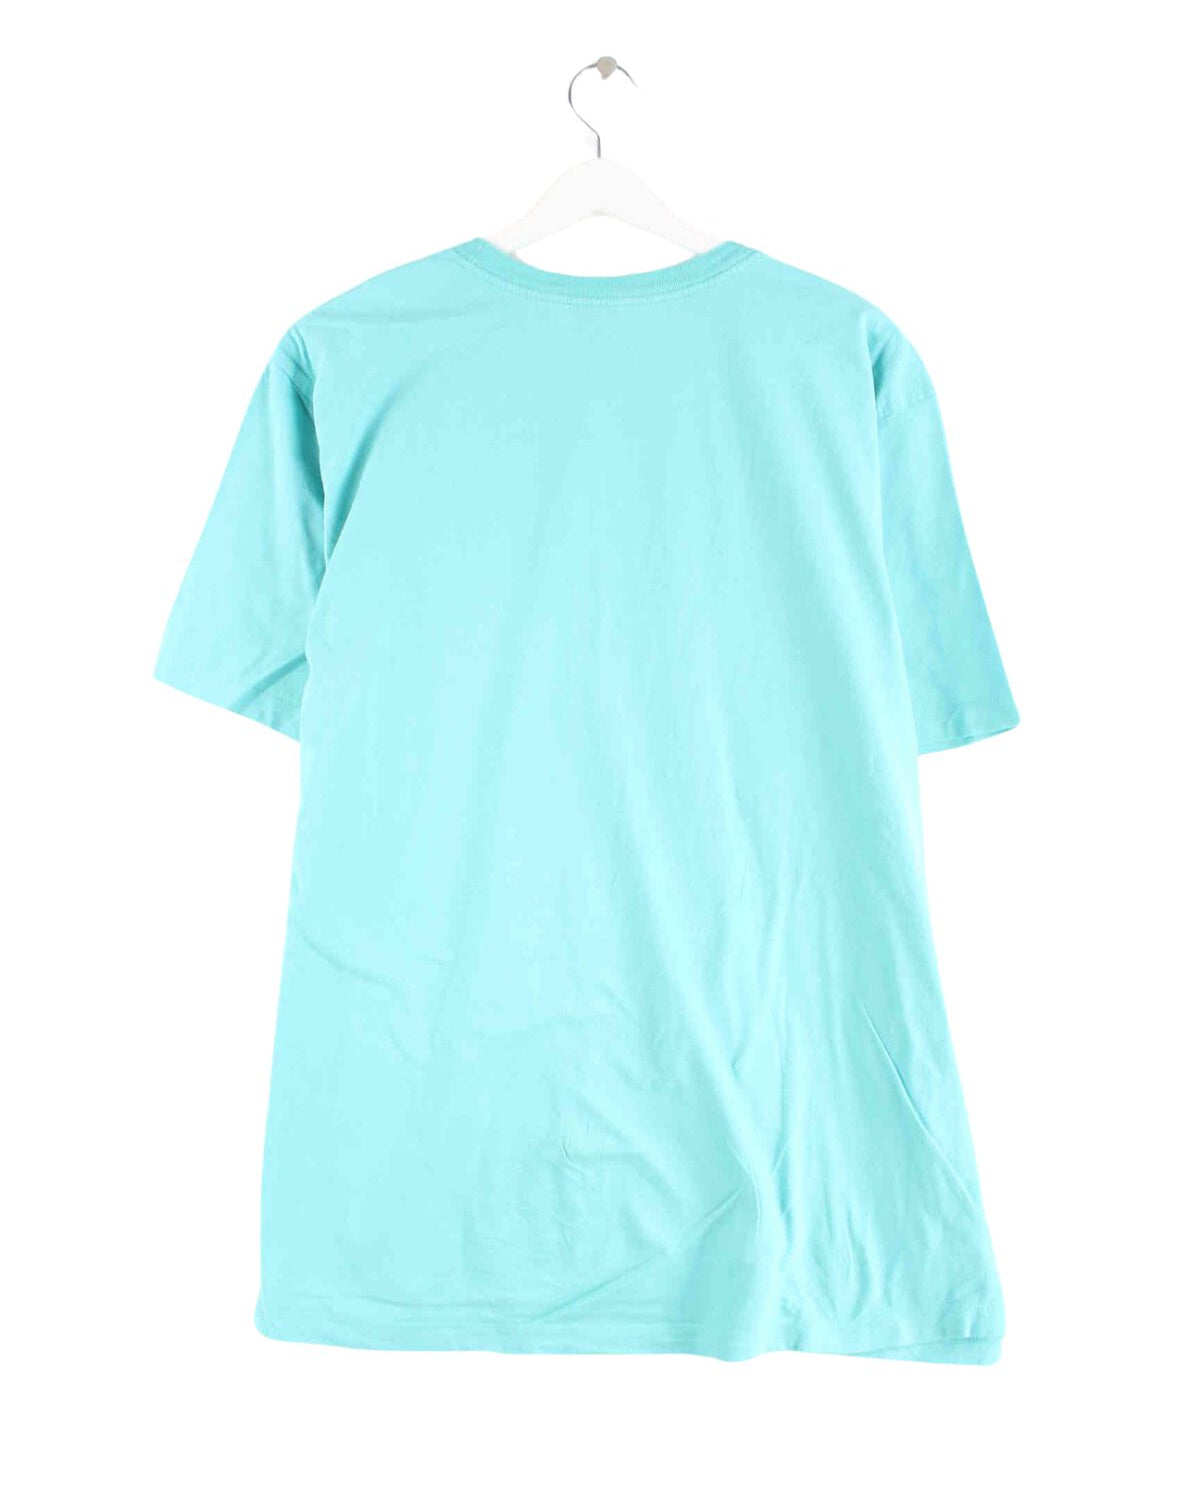 Nike Print T-Shirt Blau XL (back image)